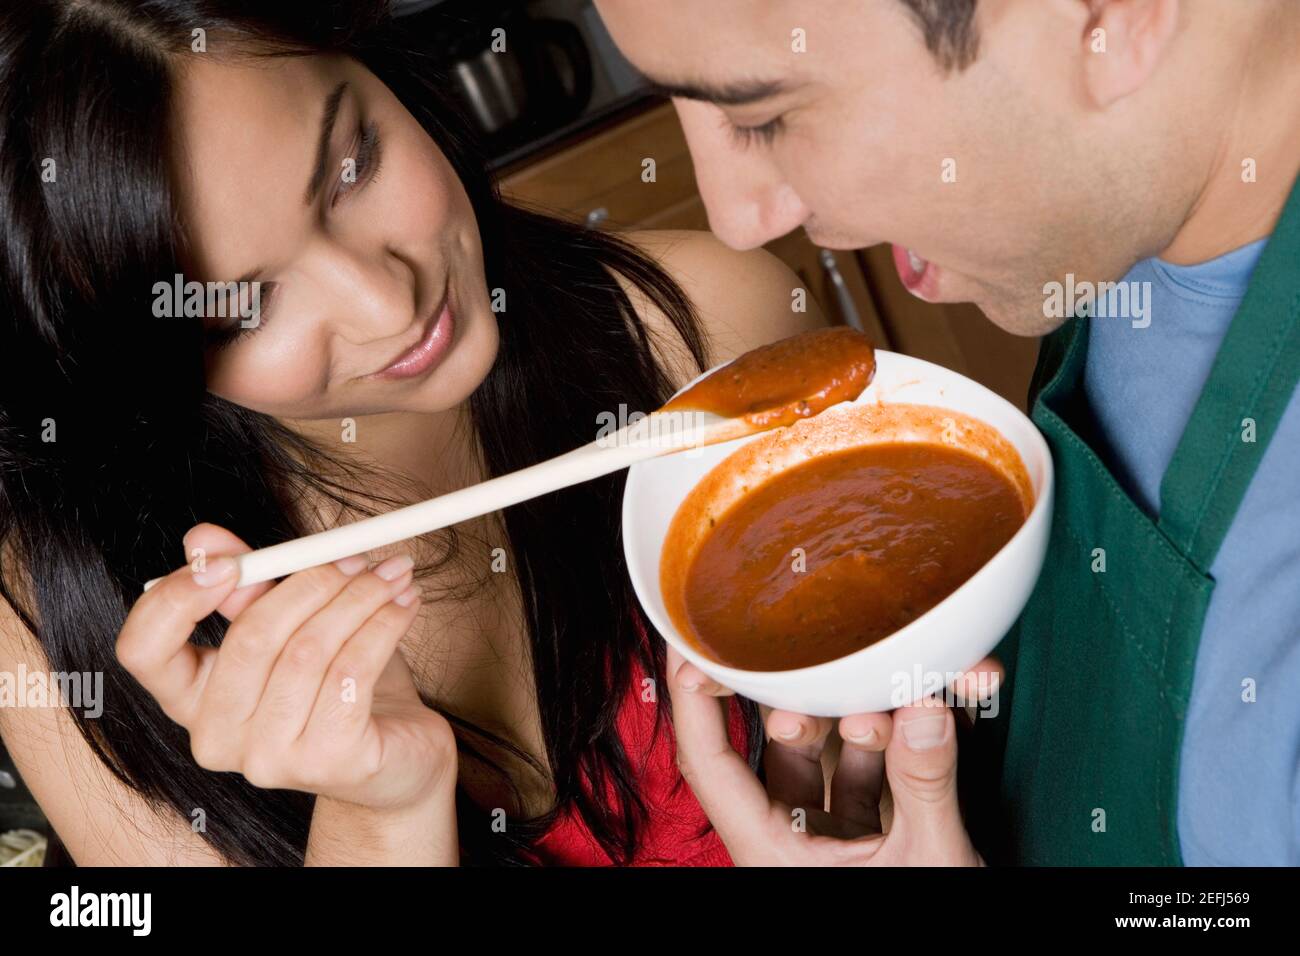 Ест кончину. Девушка ест борщ. Женщина ест суп. Мужчина ест борщ. Женщина ест мужчину.